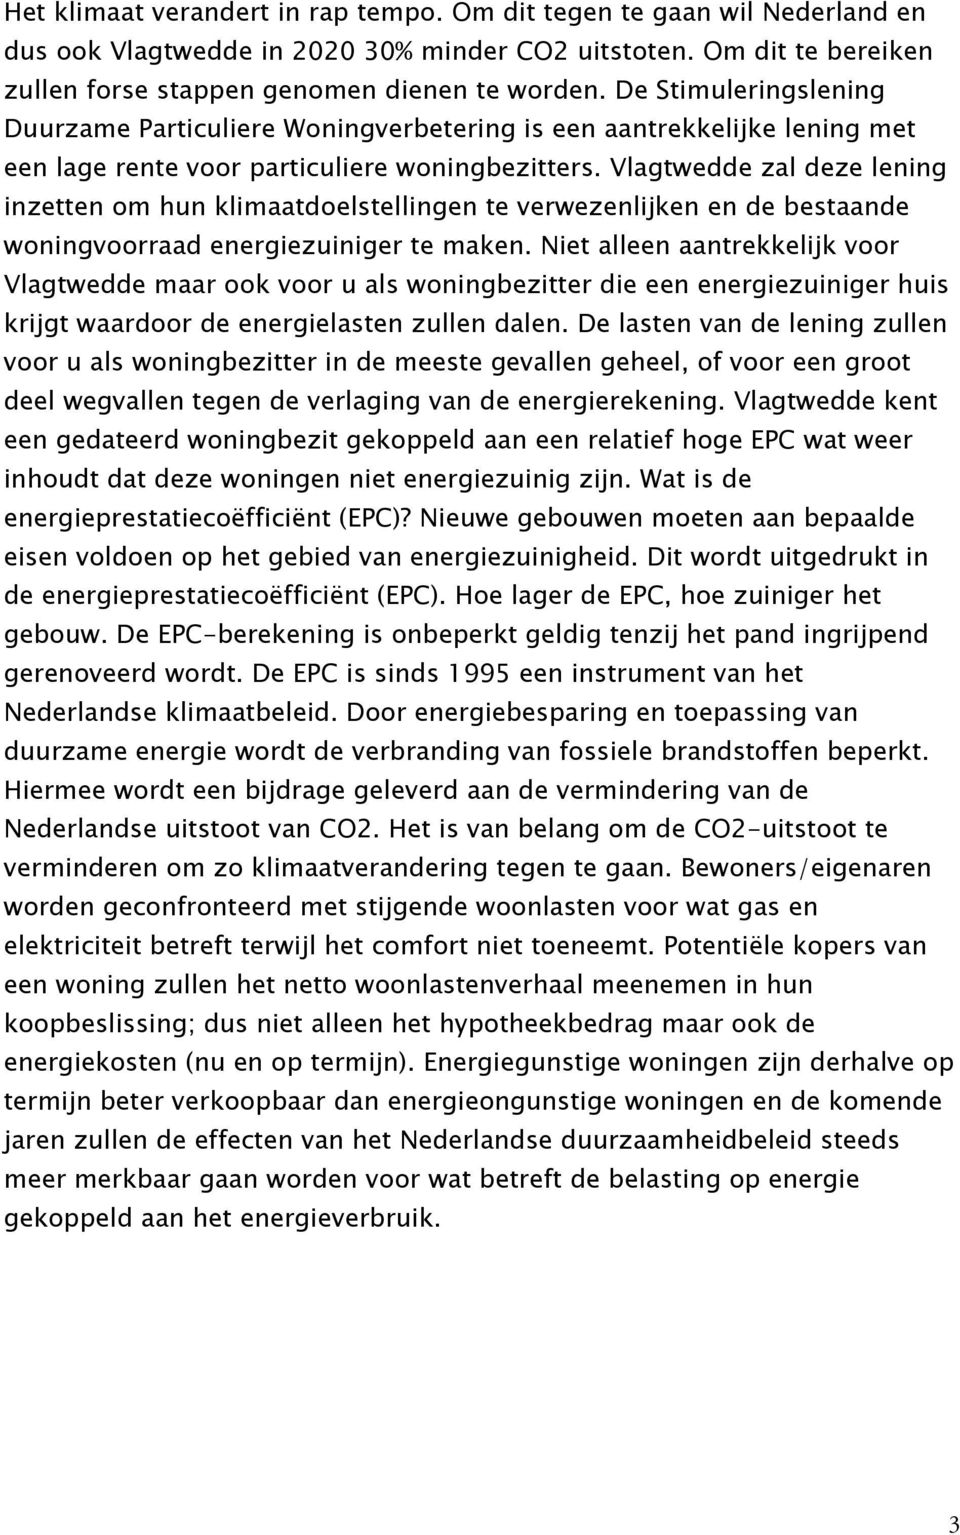 Vlagtwedde zal deze lening inzetten om hun klimaatdoelstellingen te verwezenlijken en de bestaande woningvoorraad energiezuiniger te maken.